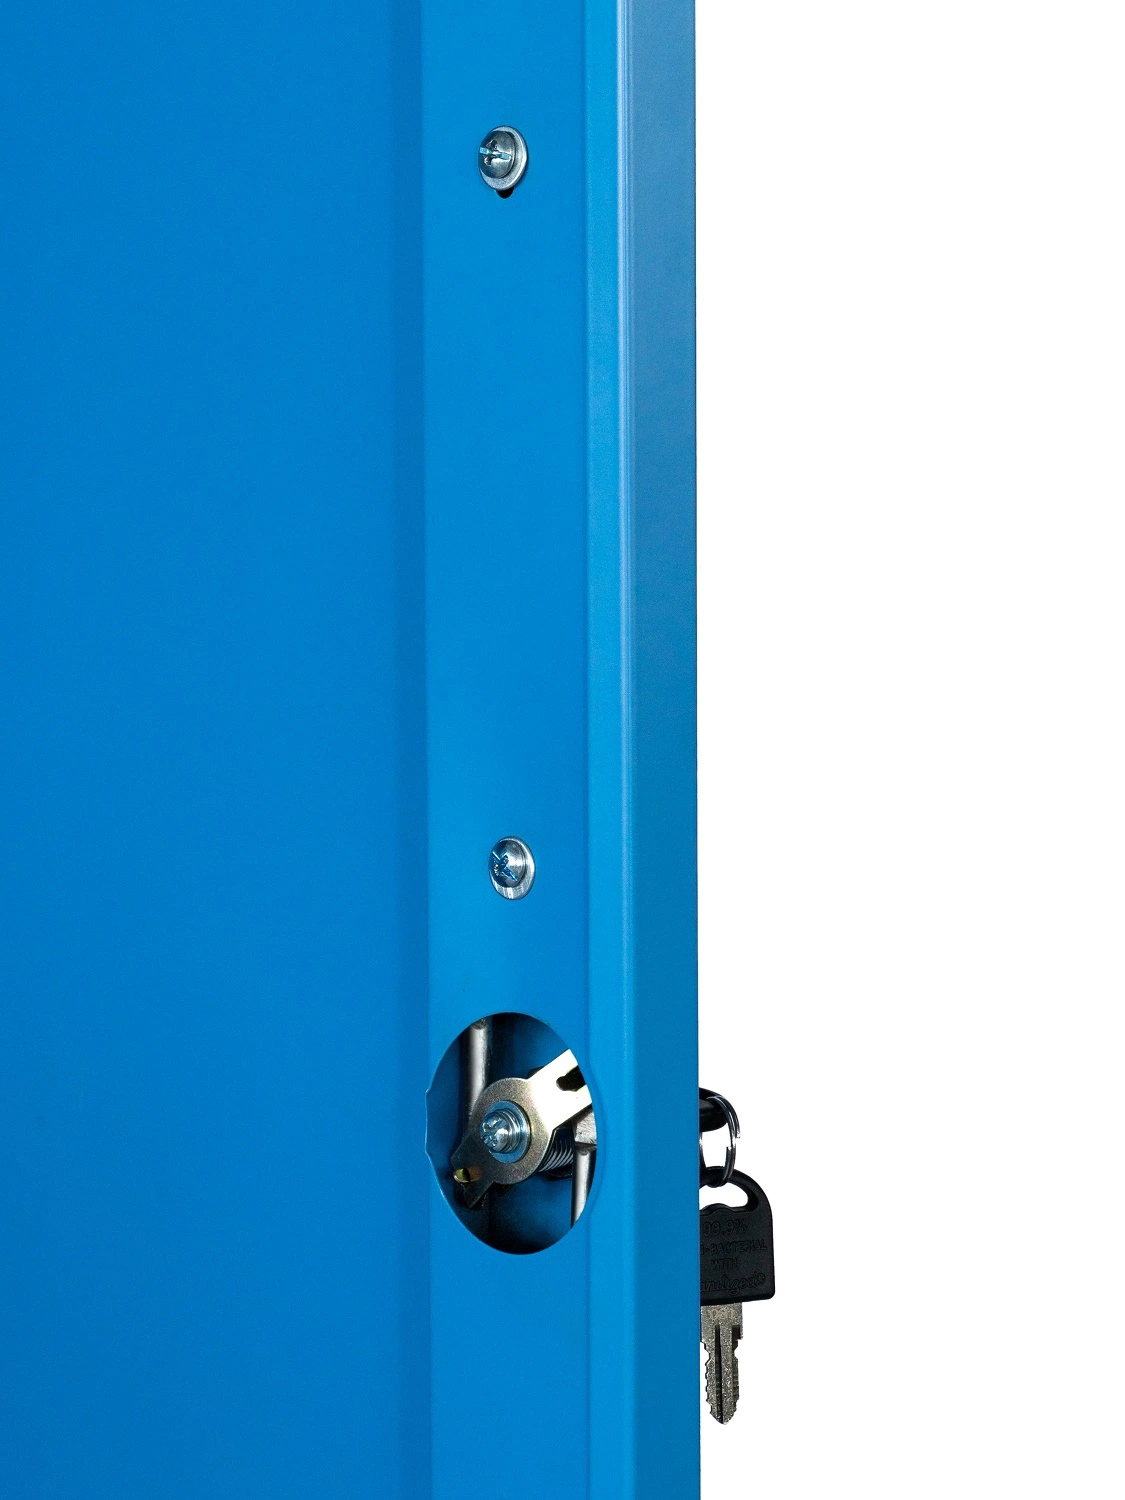 Azul Metal almacenamiento de muebles para el hogar Alimirah con estante y percha